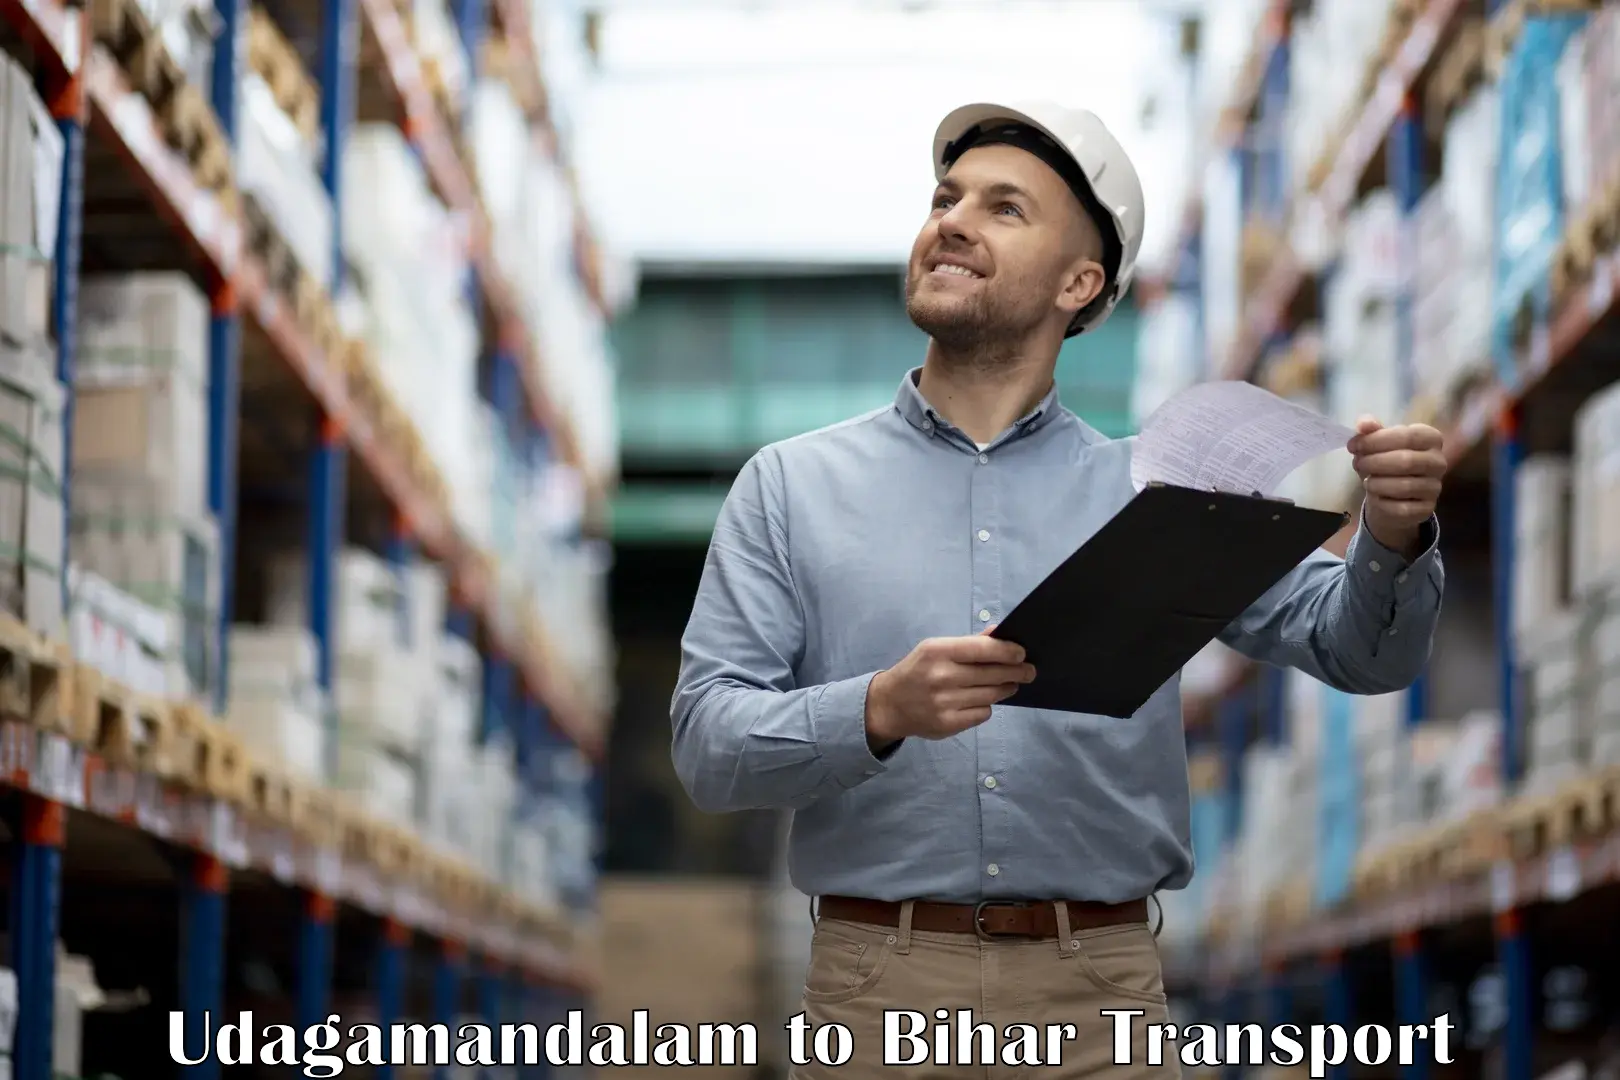 Road transport online services Udagamandalam to Kumarkhand